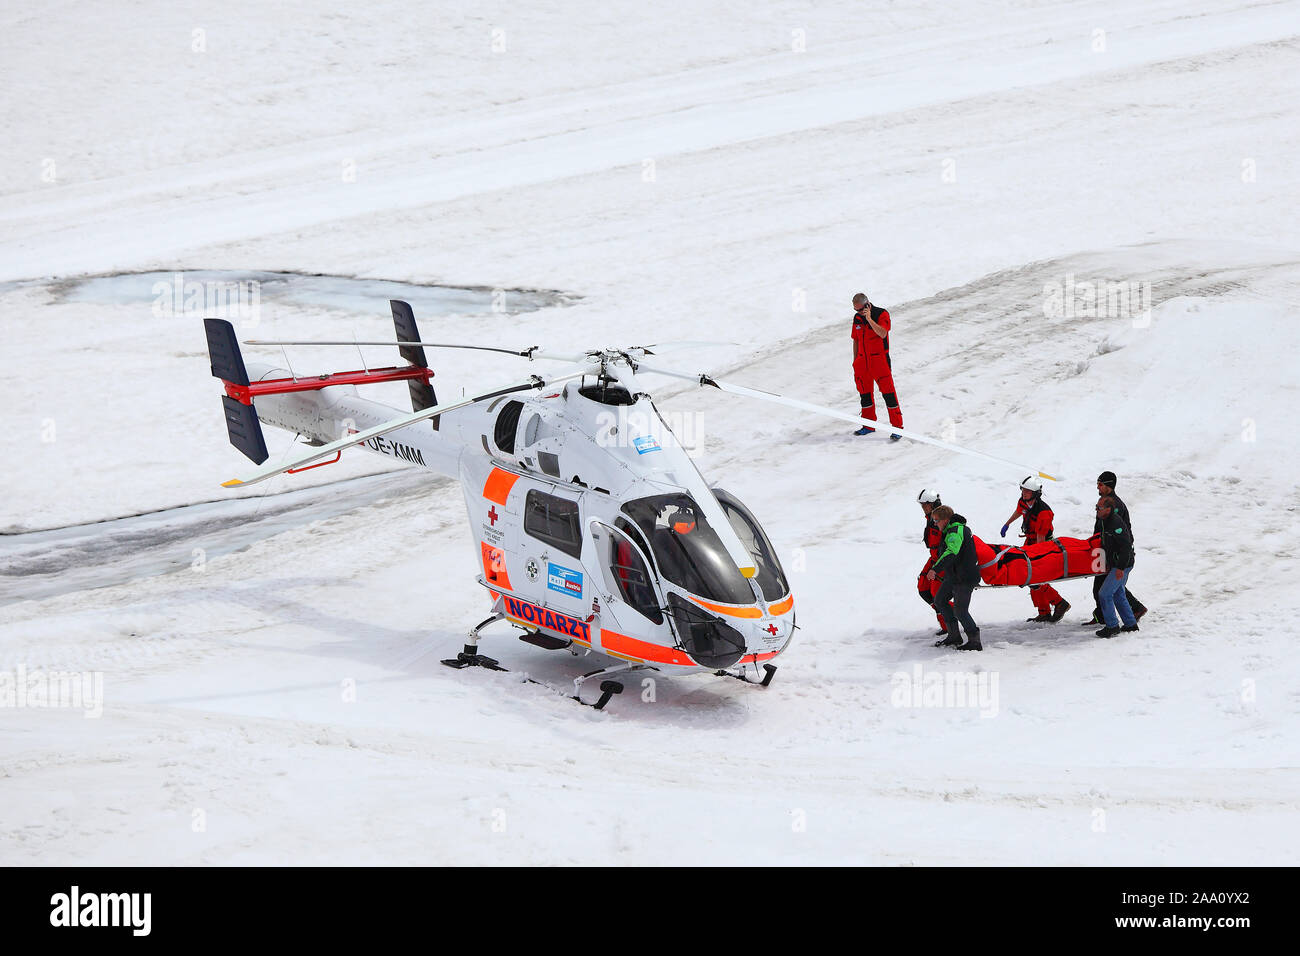 Bergung eines Verletzten mit dem Hubschrauber, Dachsteingletscher, Bergstation am Dachstein, Schladminger Tauern, Steiermark, Österreich, Europa Stock Photo